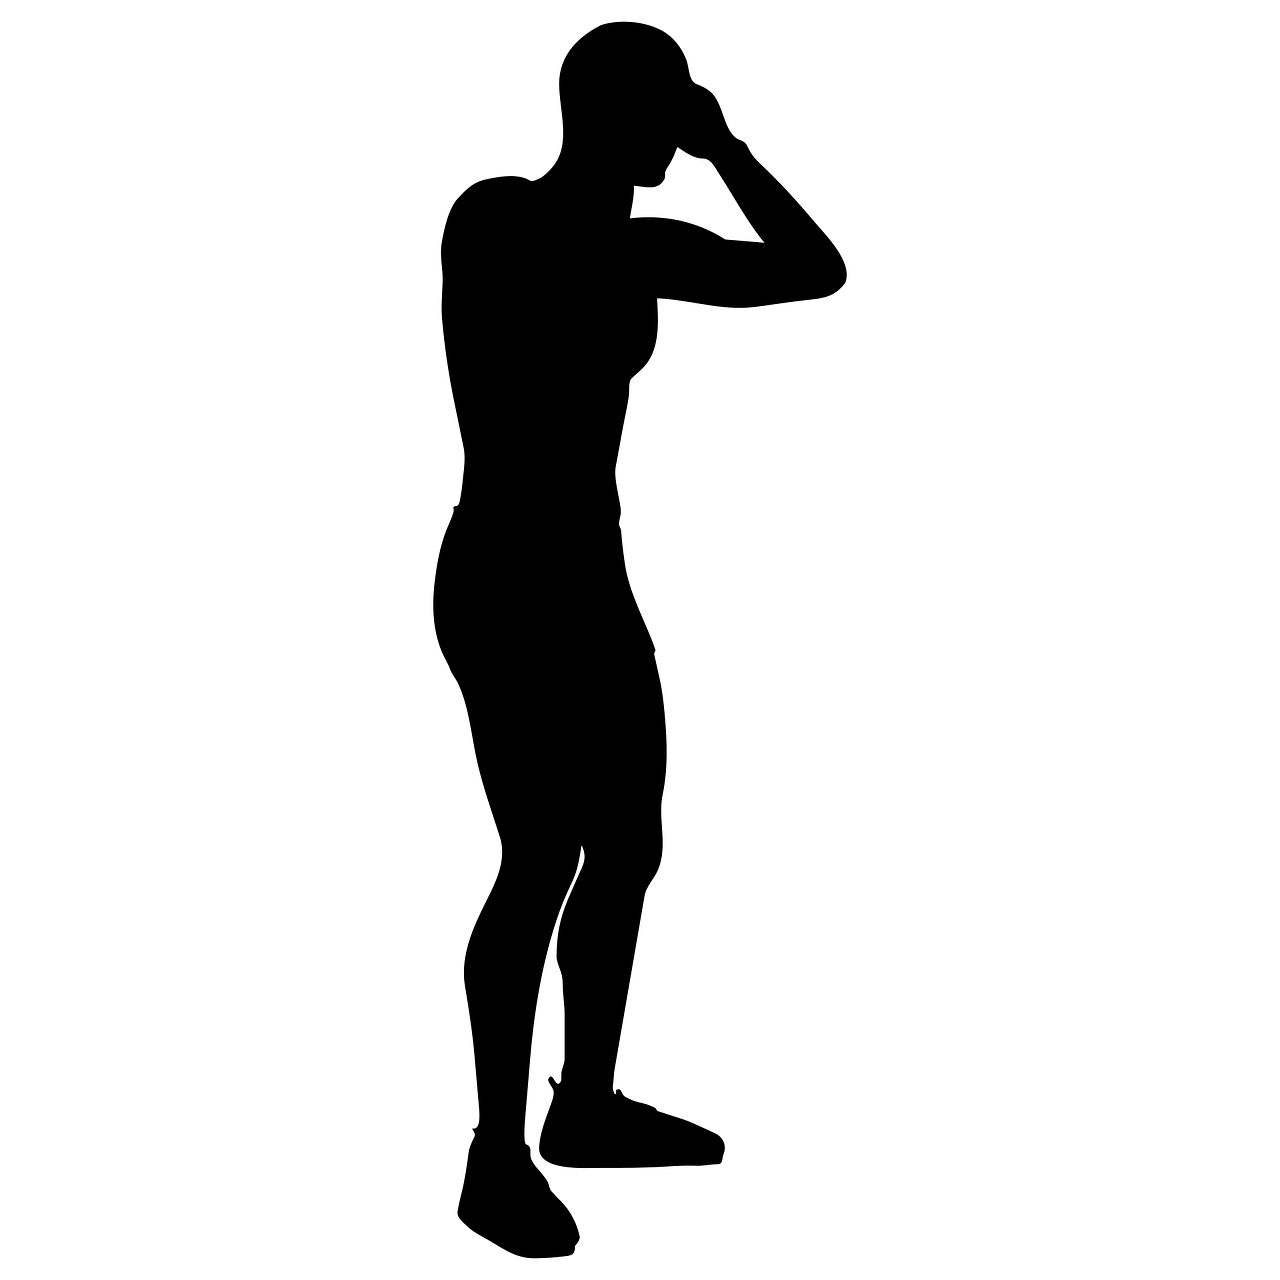 머리를 부여잡고 있는 검은 사람 그림 (출처 pixabay)